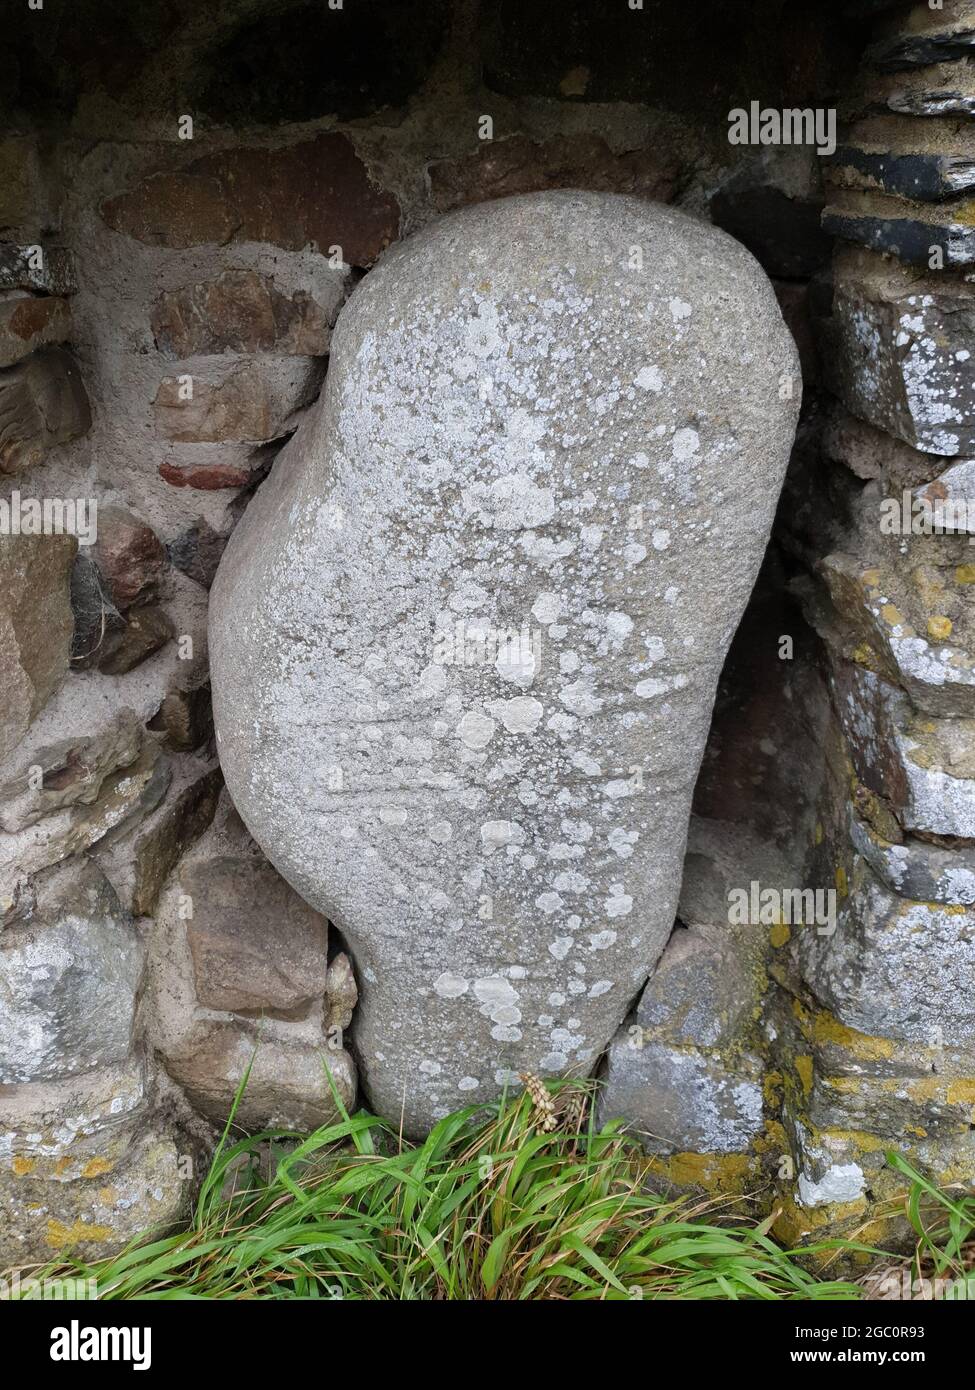 Le celte médiéval du début chrétien du 7ème au 9ème siècle, crosse en pierre d'anneau trouvée dans un mur gallois à Martin's Haven Pembrokeshire South Wales, stock photo ima Banque D'Images